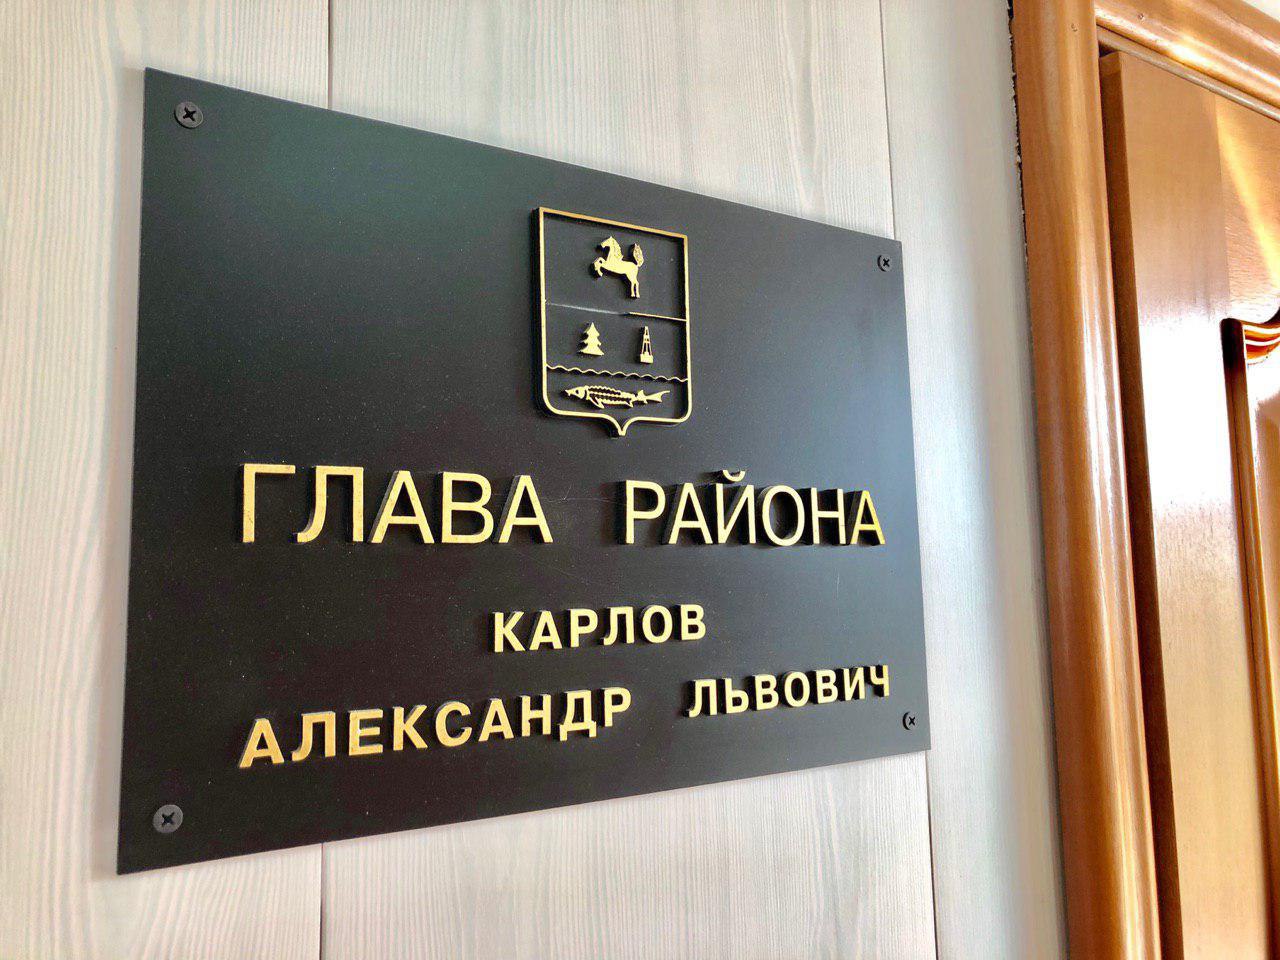 Сегодня 30 ноября аппаратное совещание в администрации района вновь началось с доклада главного врача районной больницы Владимира Булычева